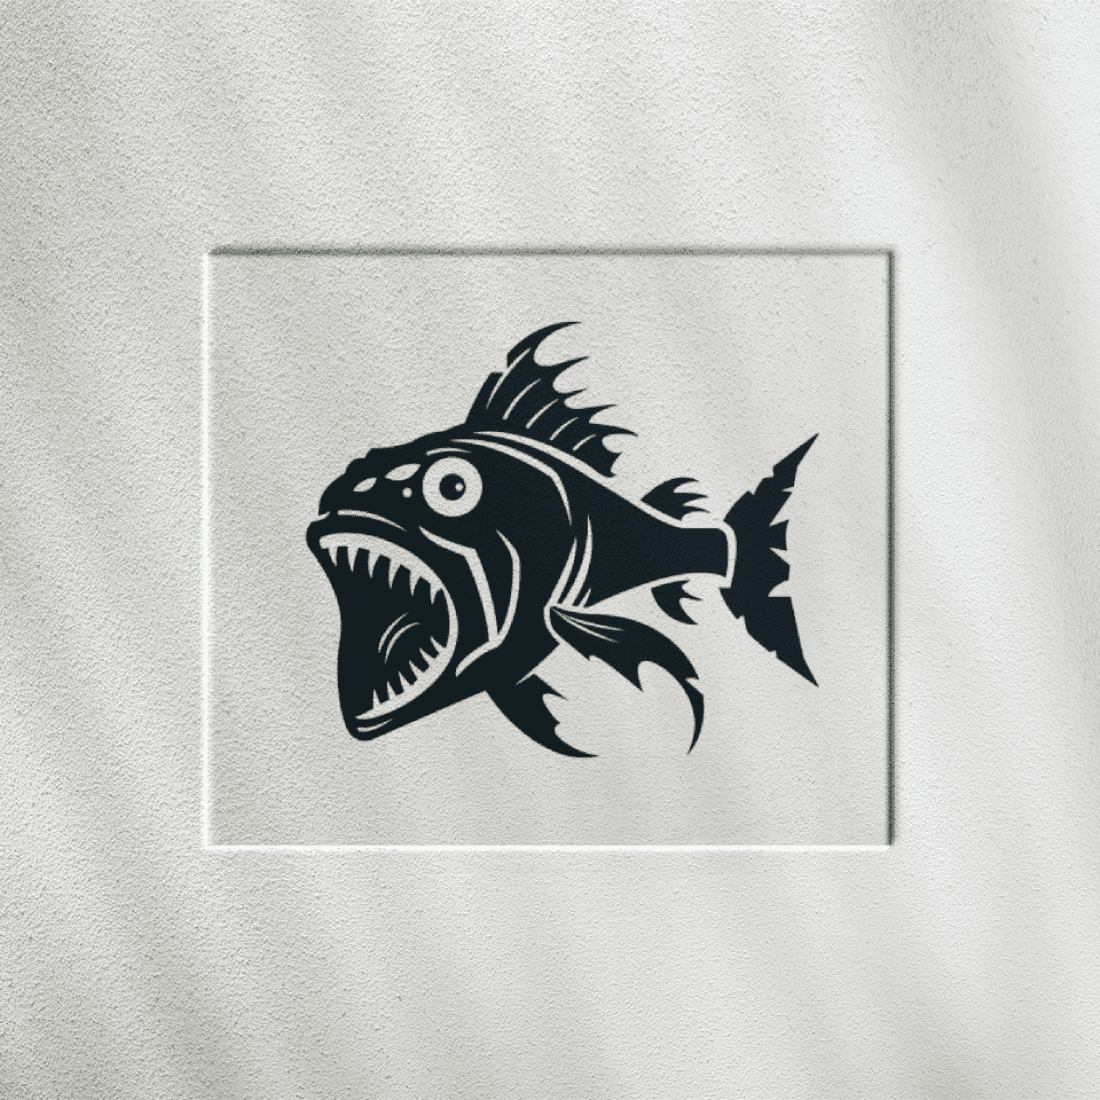 Piranha Logo preview image.